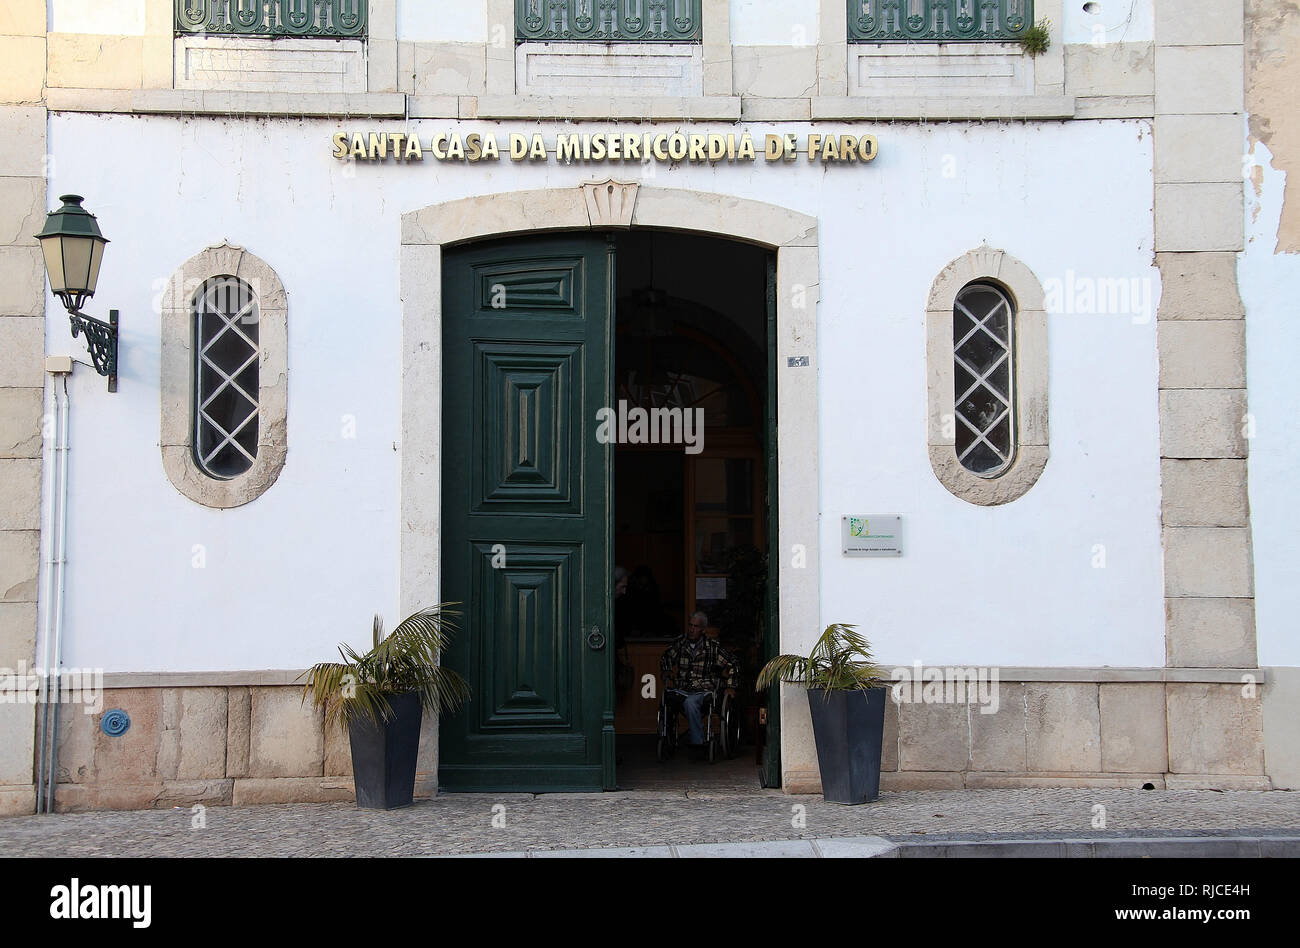 Santa Casa Da Misericórdia in Viseu, Portugal Stock Photo - Alamy